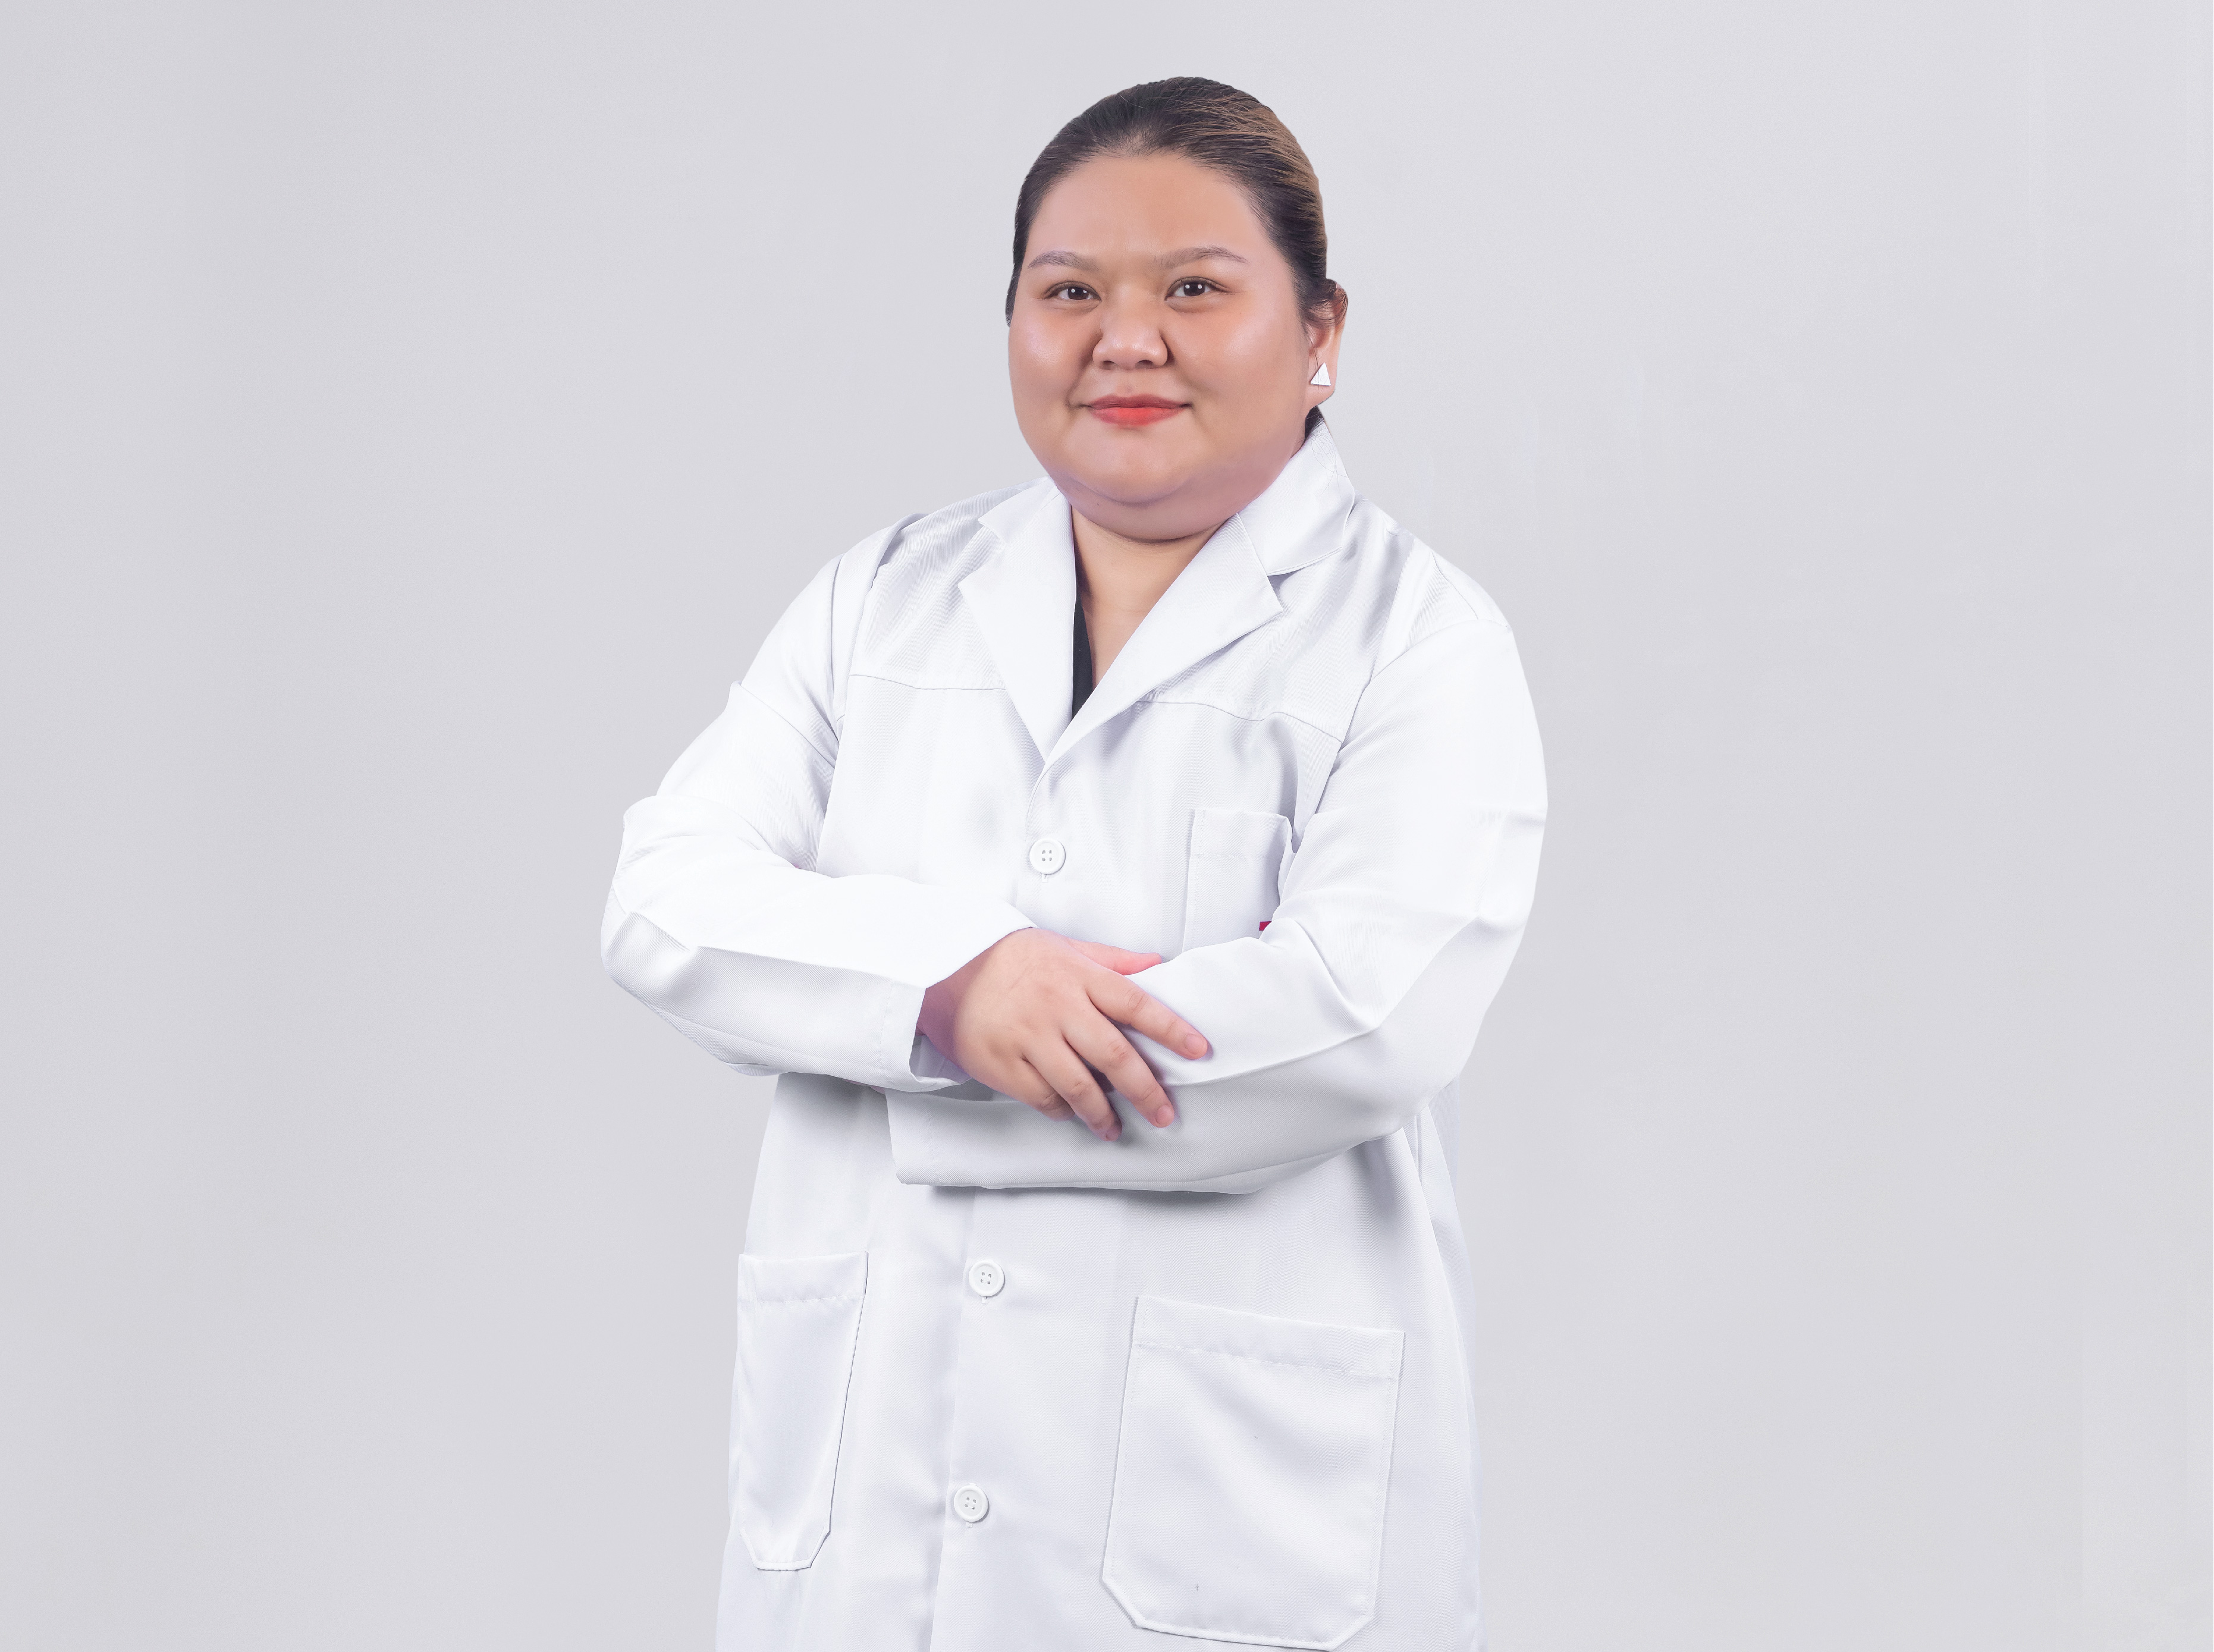 Dr. Nalinee Jinasen